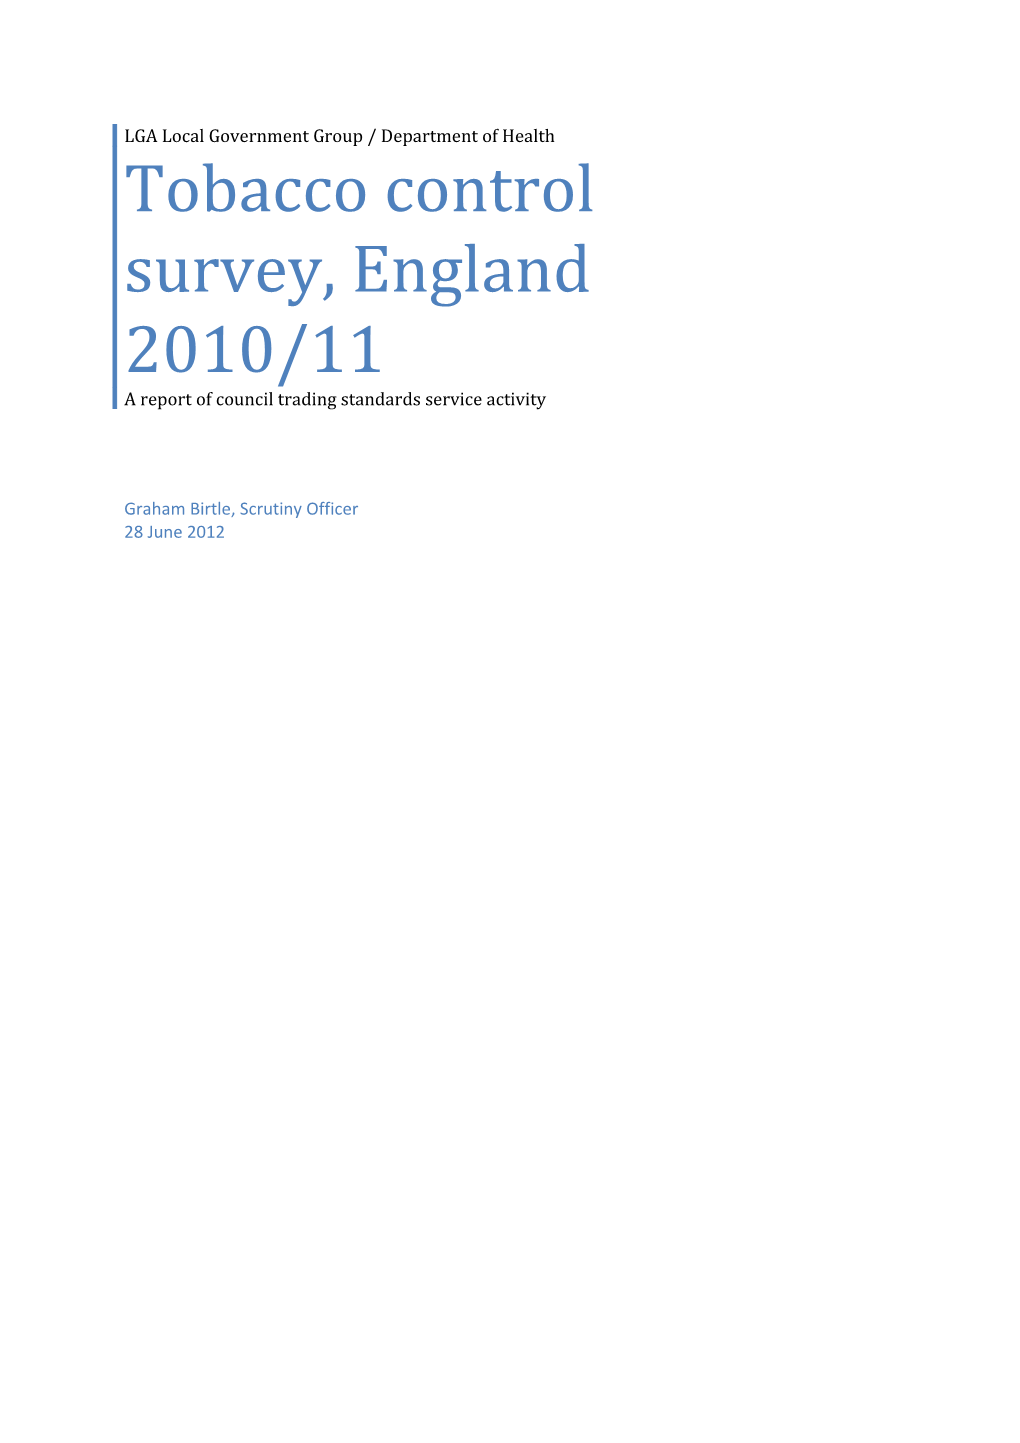 Tobacco Control Survey, England 2010/11